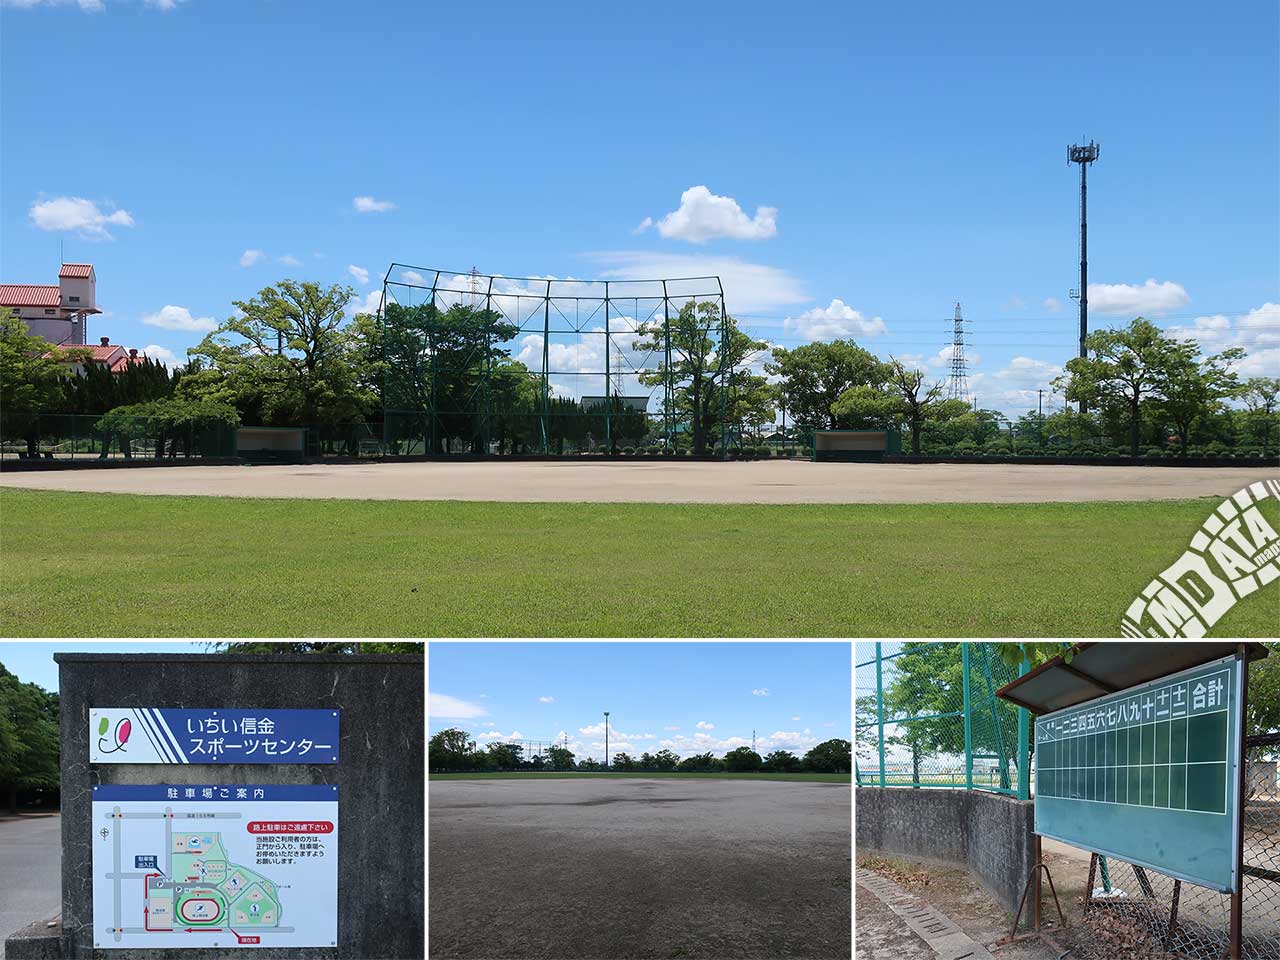 いちい信金スポーツセンター野球場の写真 Photo taken on 2022/06/08